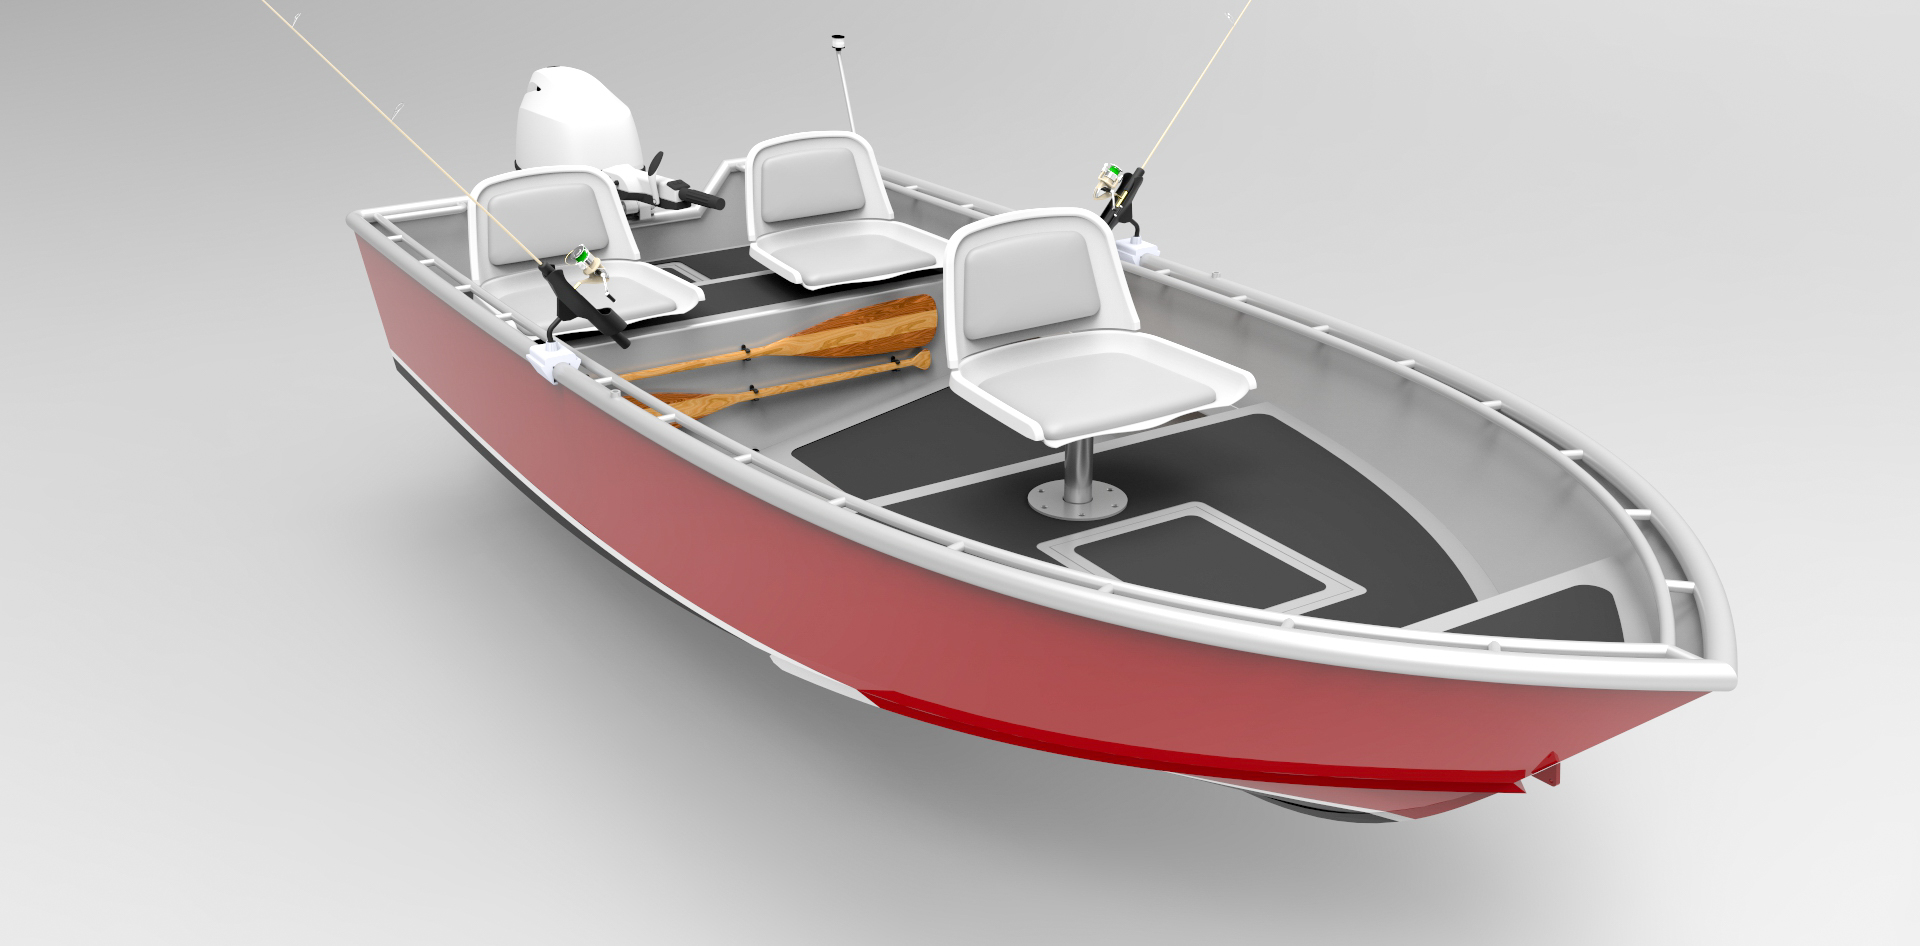 14 Foot (4.3m) Skiff - Sport Fish - Metal Boat Kits